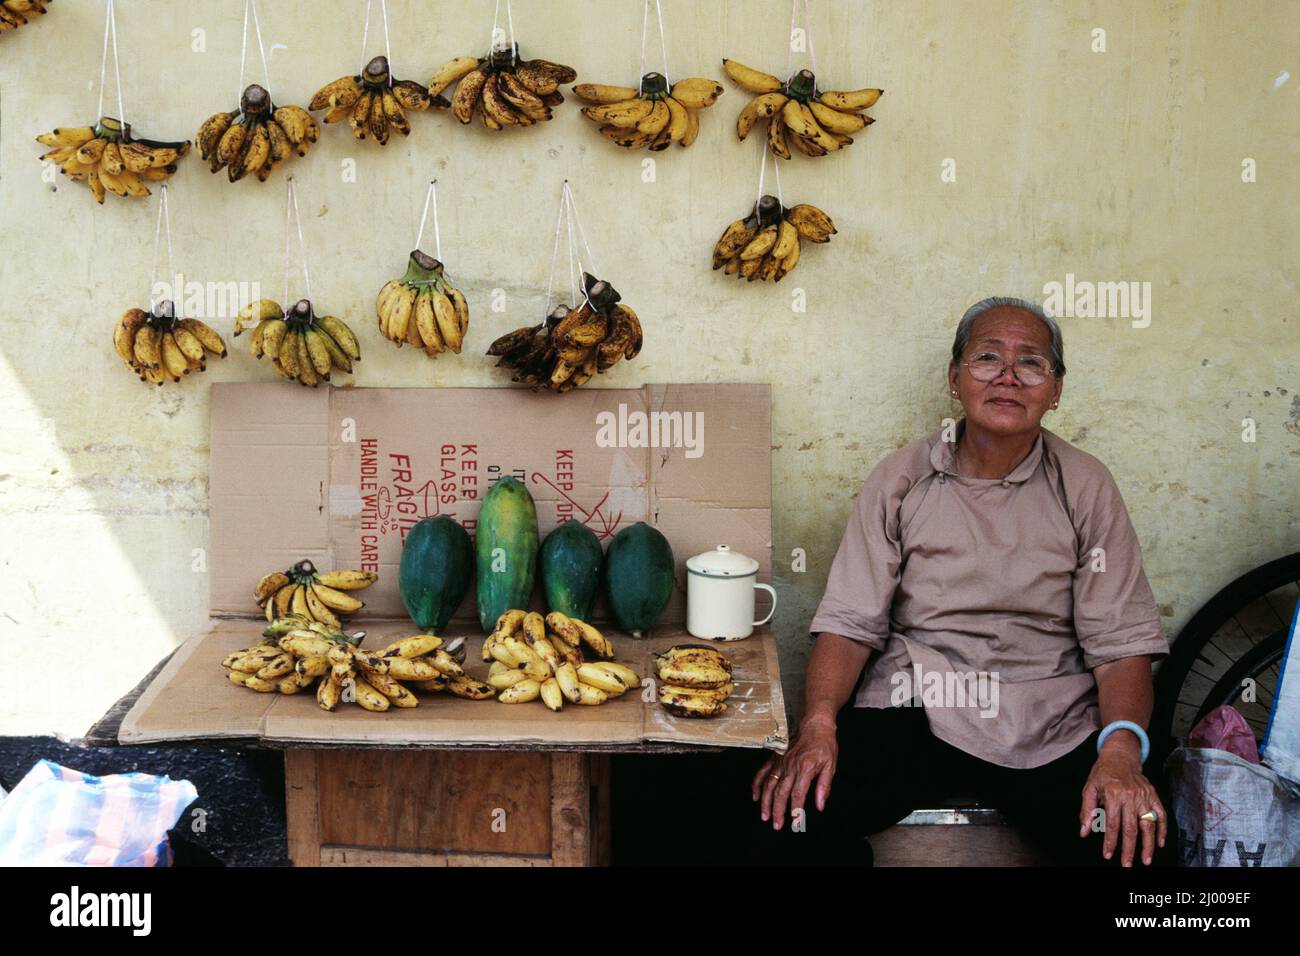 Singapur. Mercado al aire libre. Mujer que vende bananas. Foto de stock